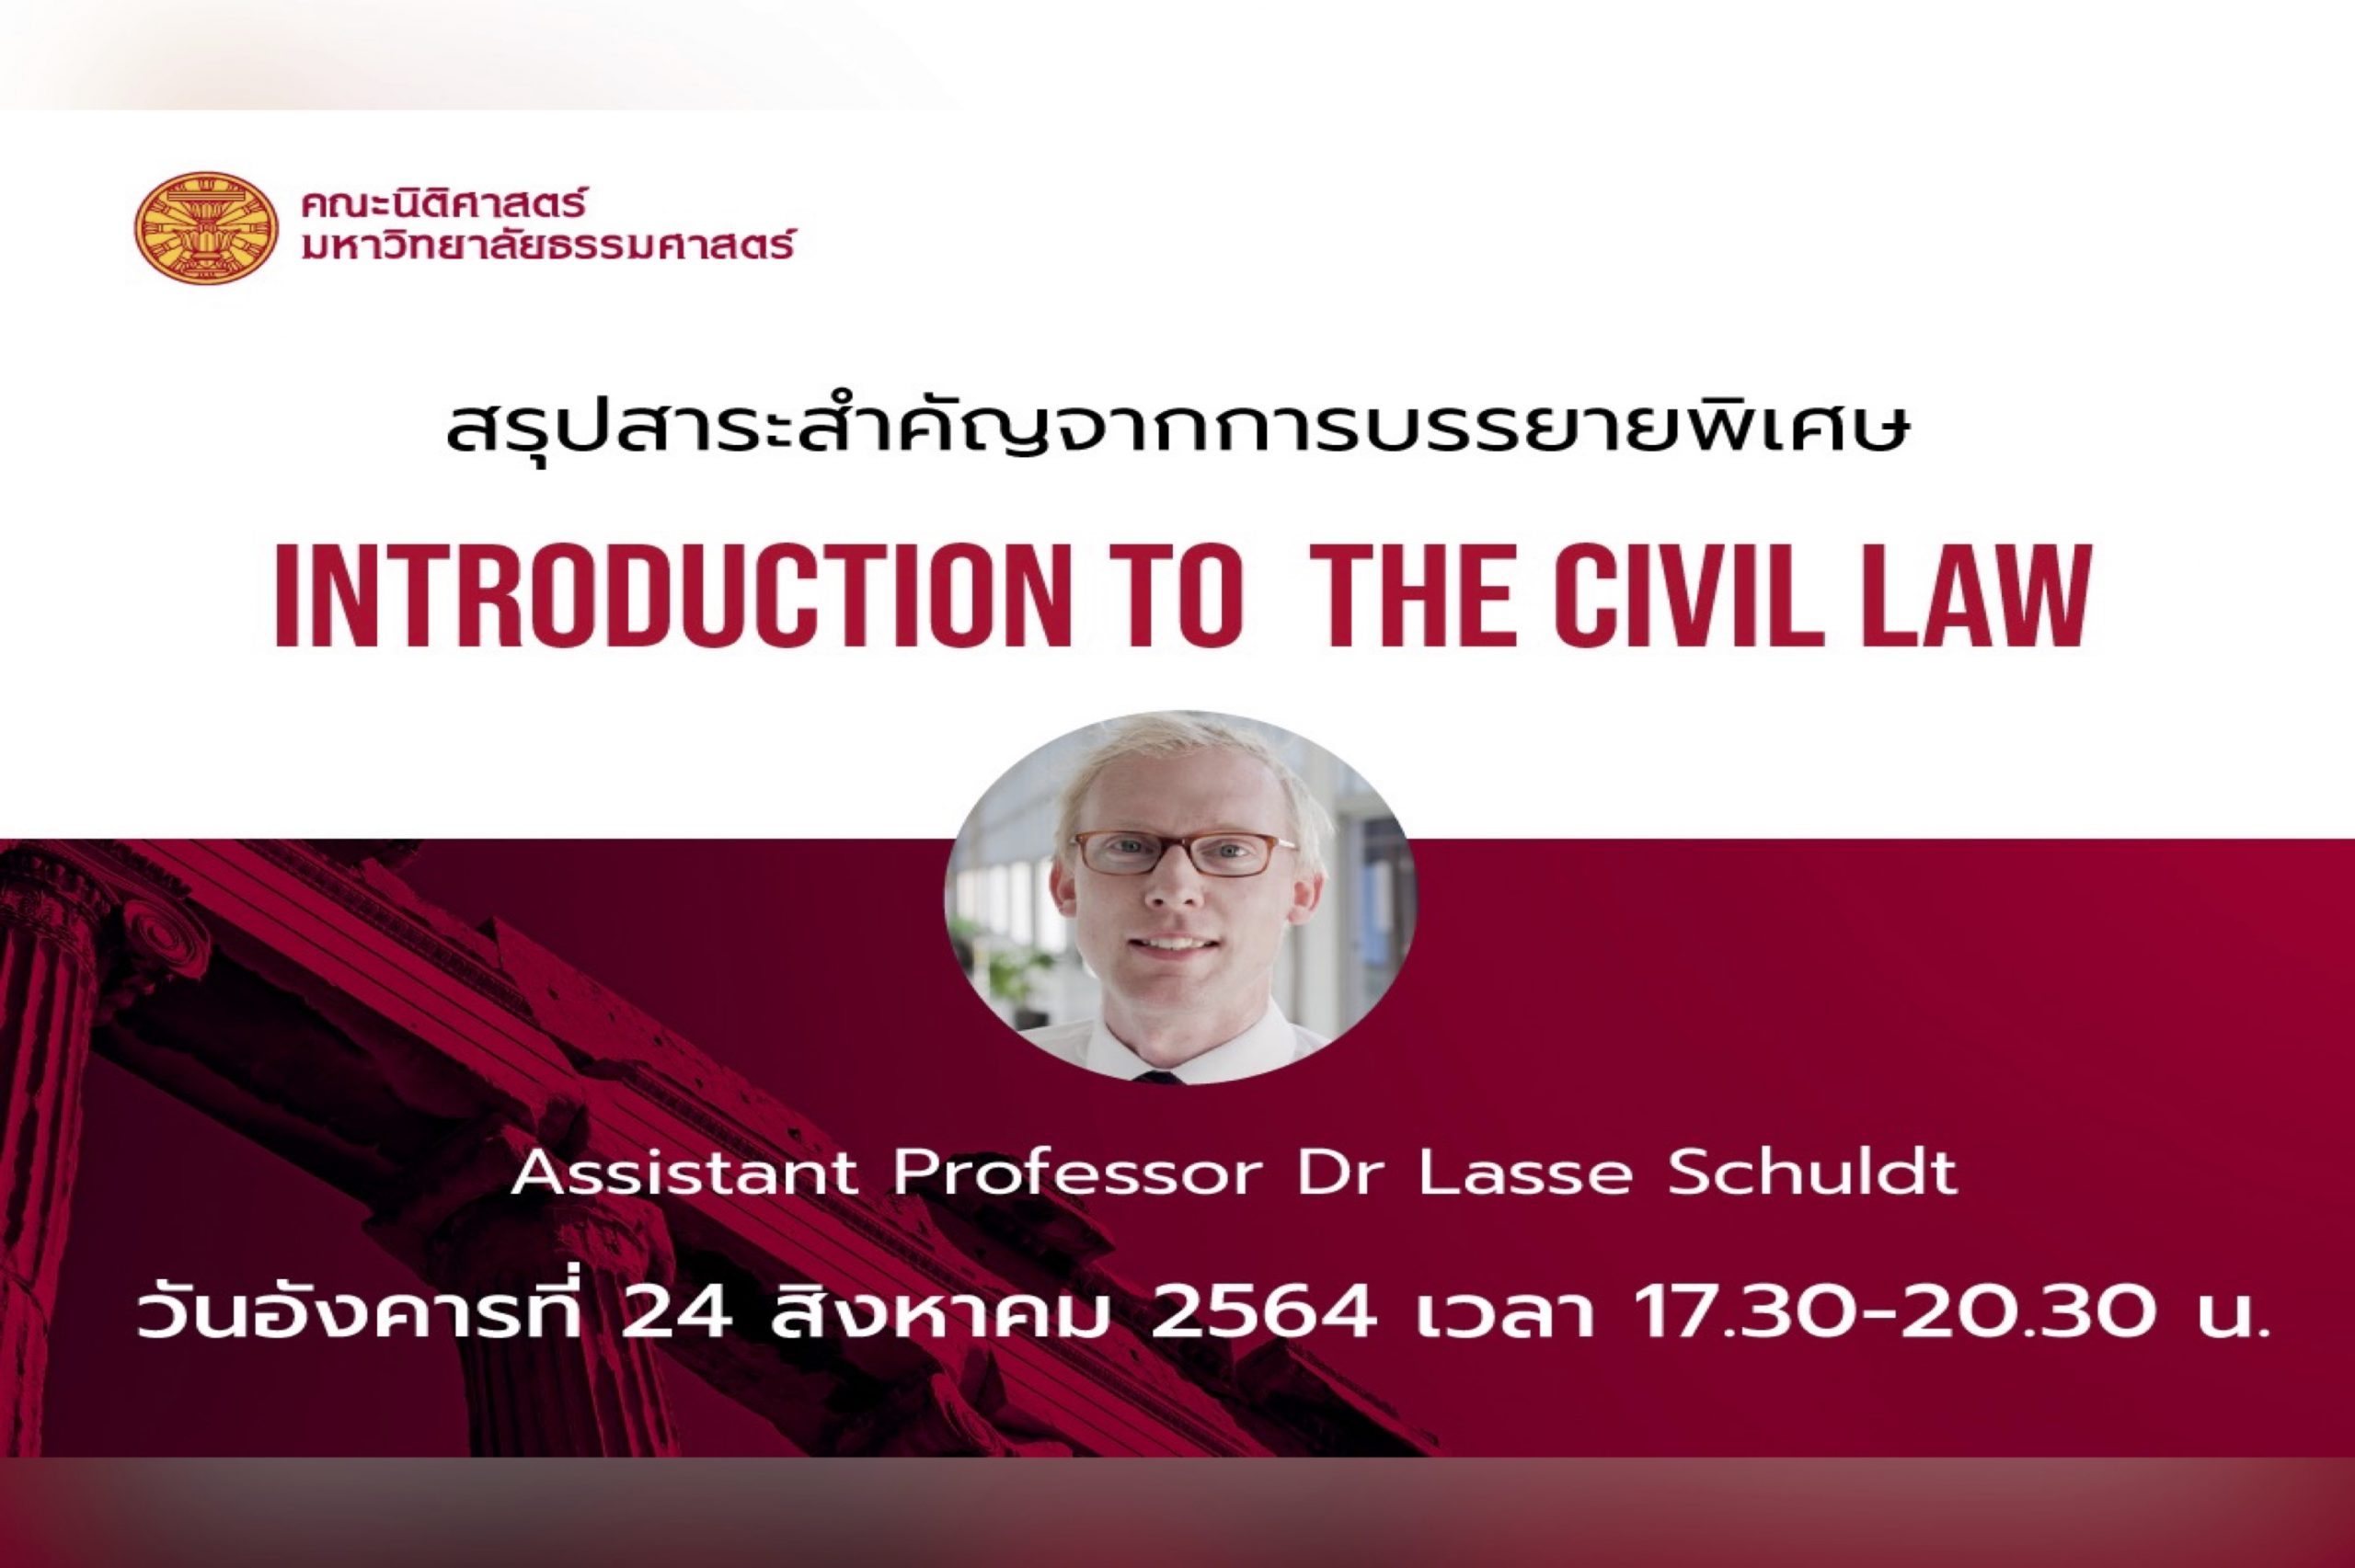 สรุปสาระสำคัญจากการบรรยายพิเศษ หัวข้อ “Introduction to the Civil Law” โดย Assistant Professor Dr Lasse Schuldt